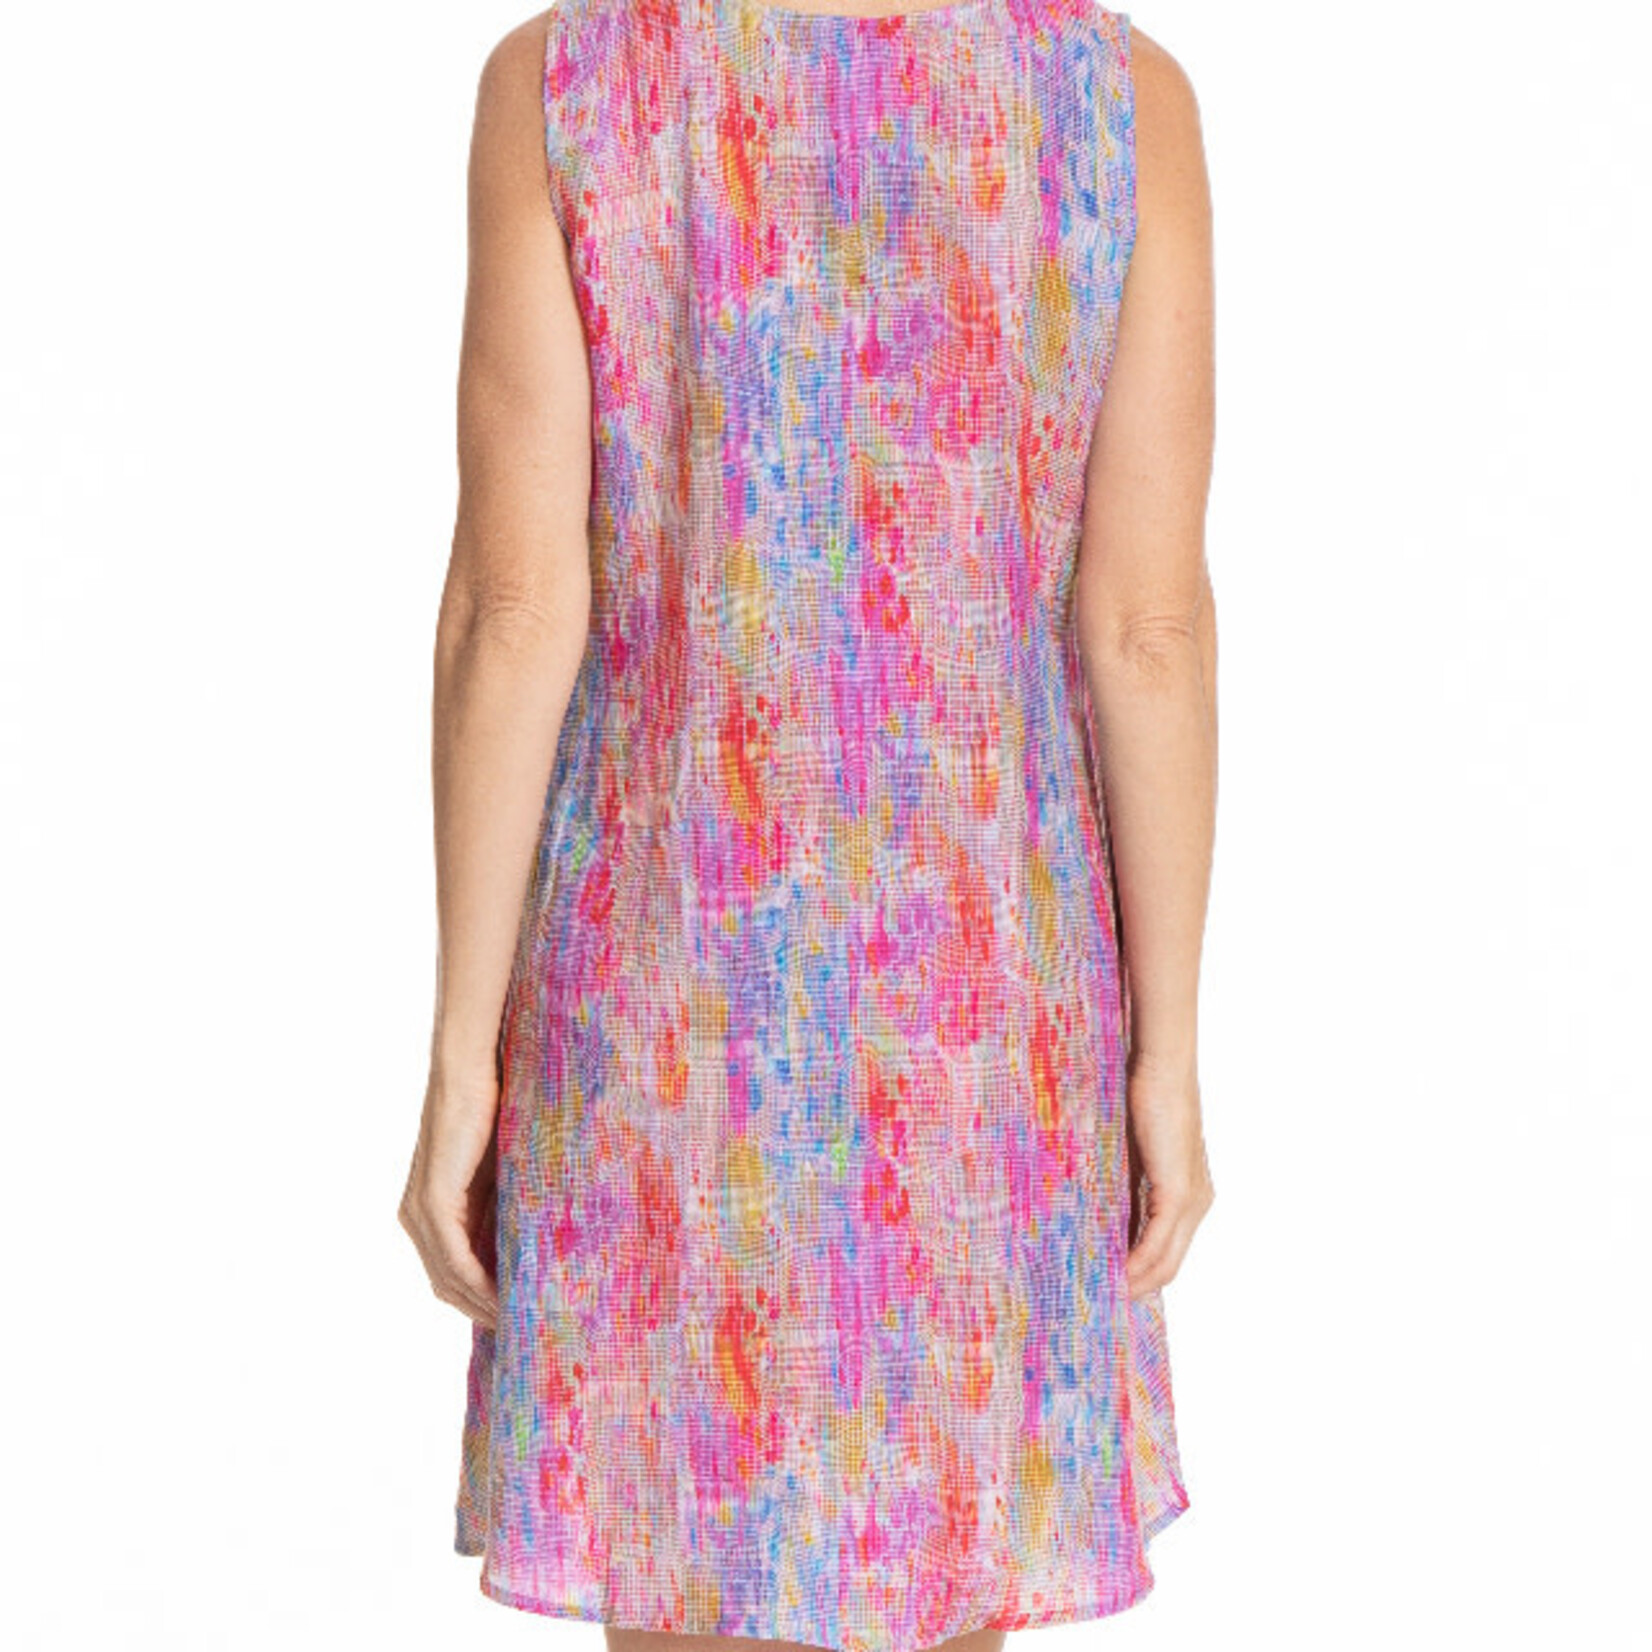 APNY Bright Pixel Print V Neck Sleeveless Dress